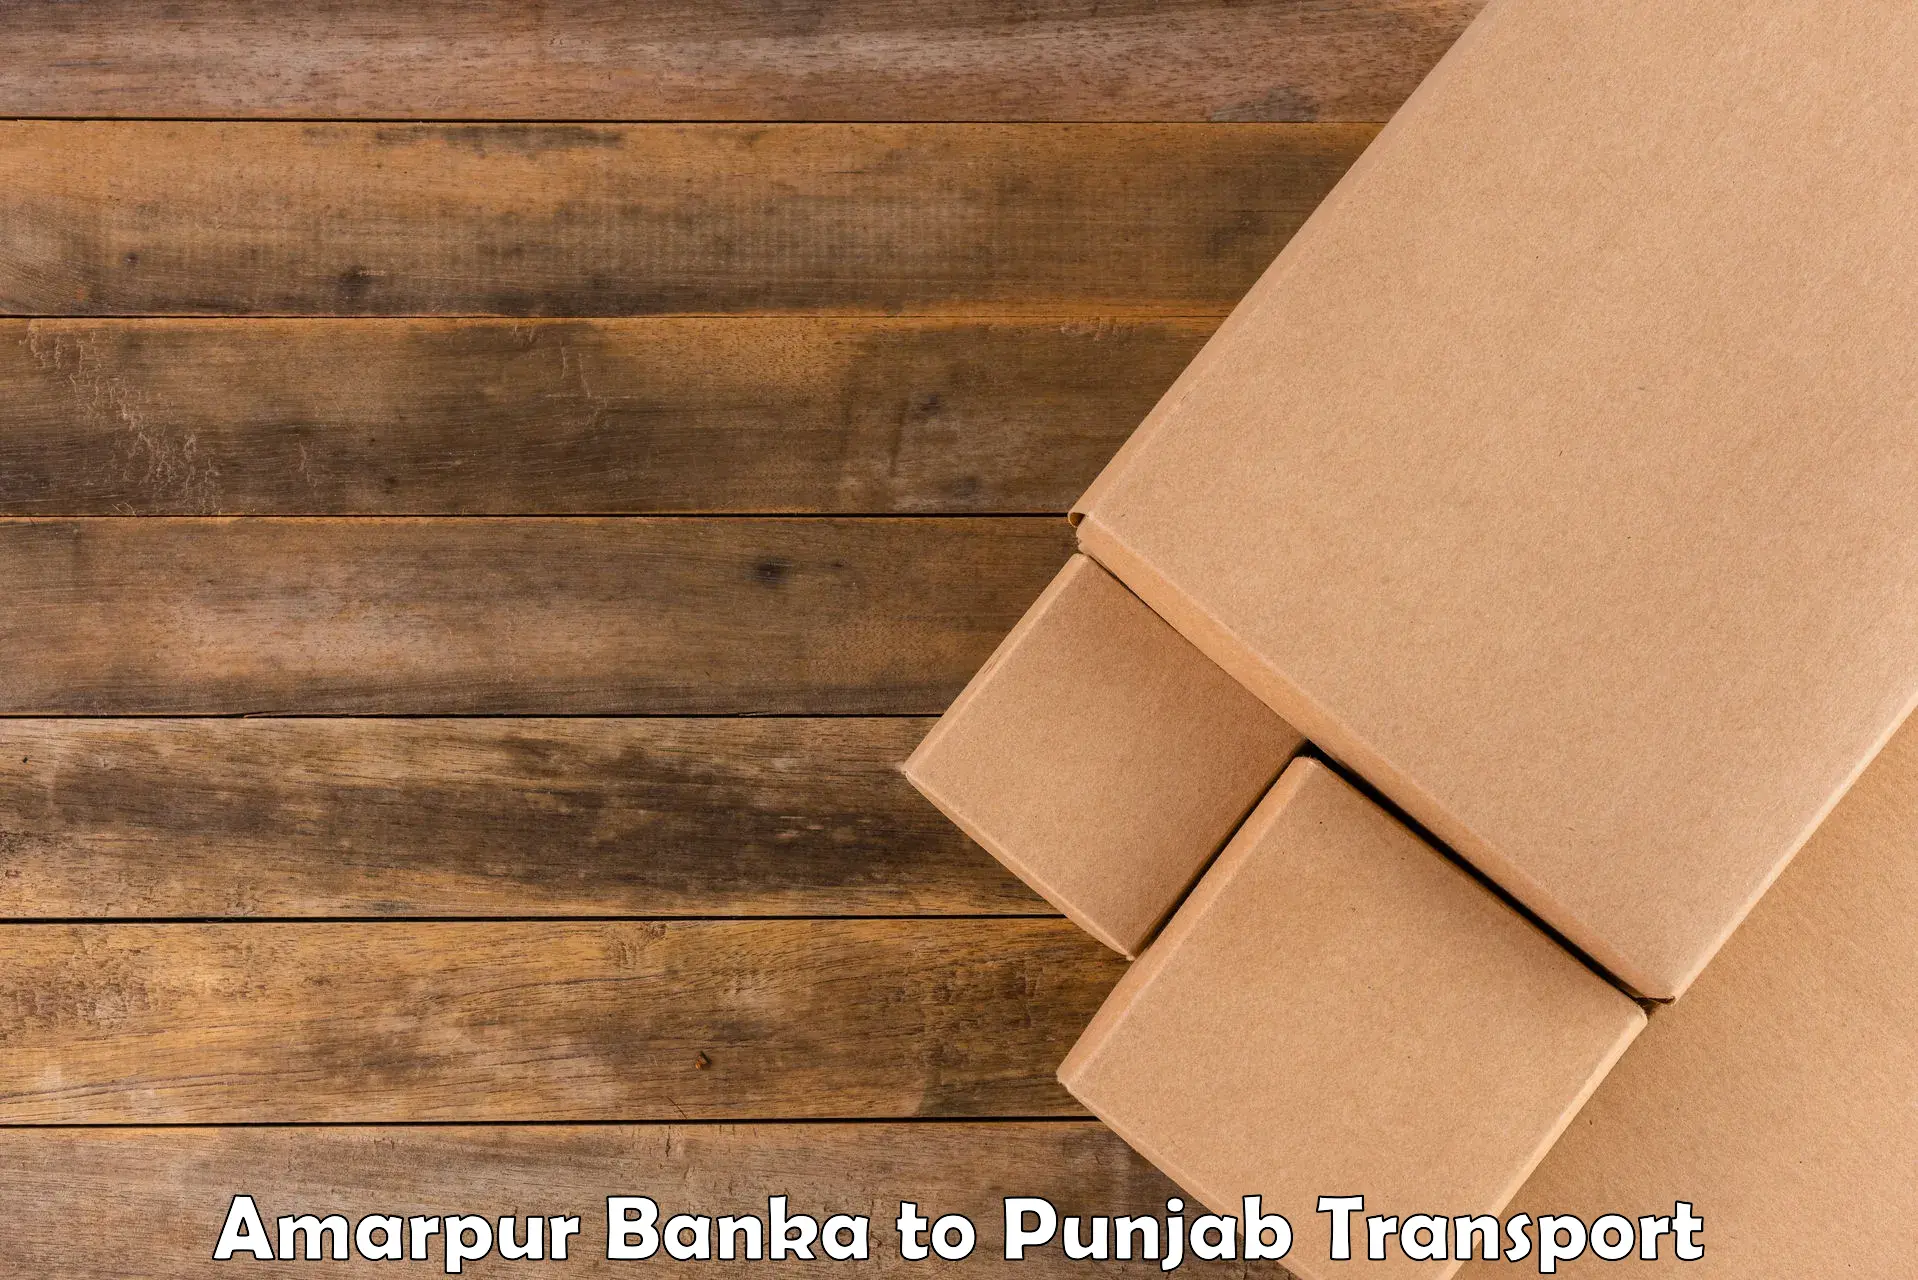 Two wheeler transport services Amarpur Banka to Punjab